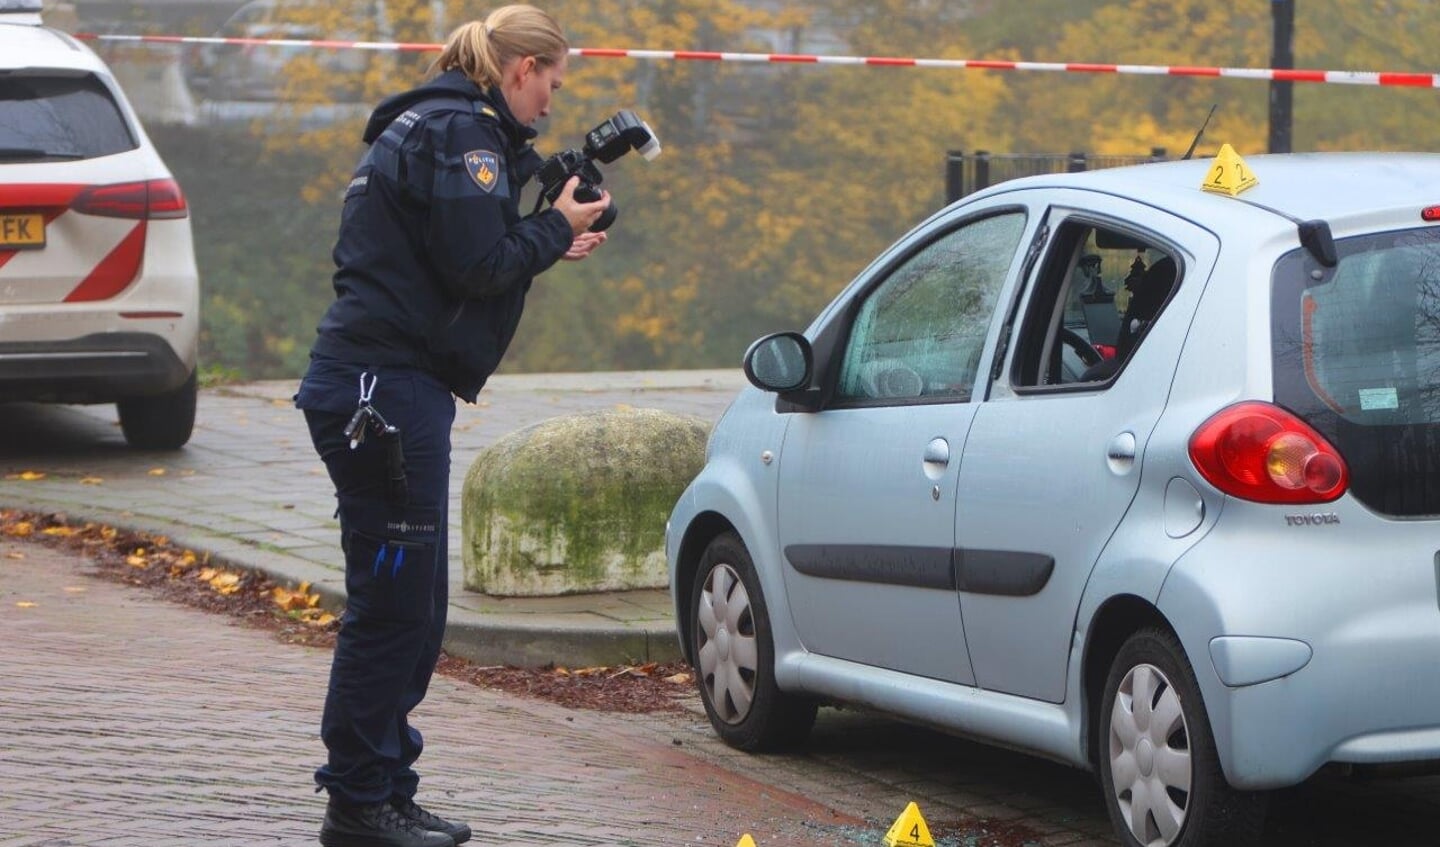 De politie is een groot buurtonderzoek gestart na de explosie vanochtend rond 08.00 uur aan de Acaciasingel in Den Bosch waarbij meerdere voertuigen en ook een woning schade hebben opgelopen.